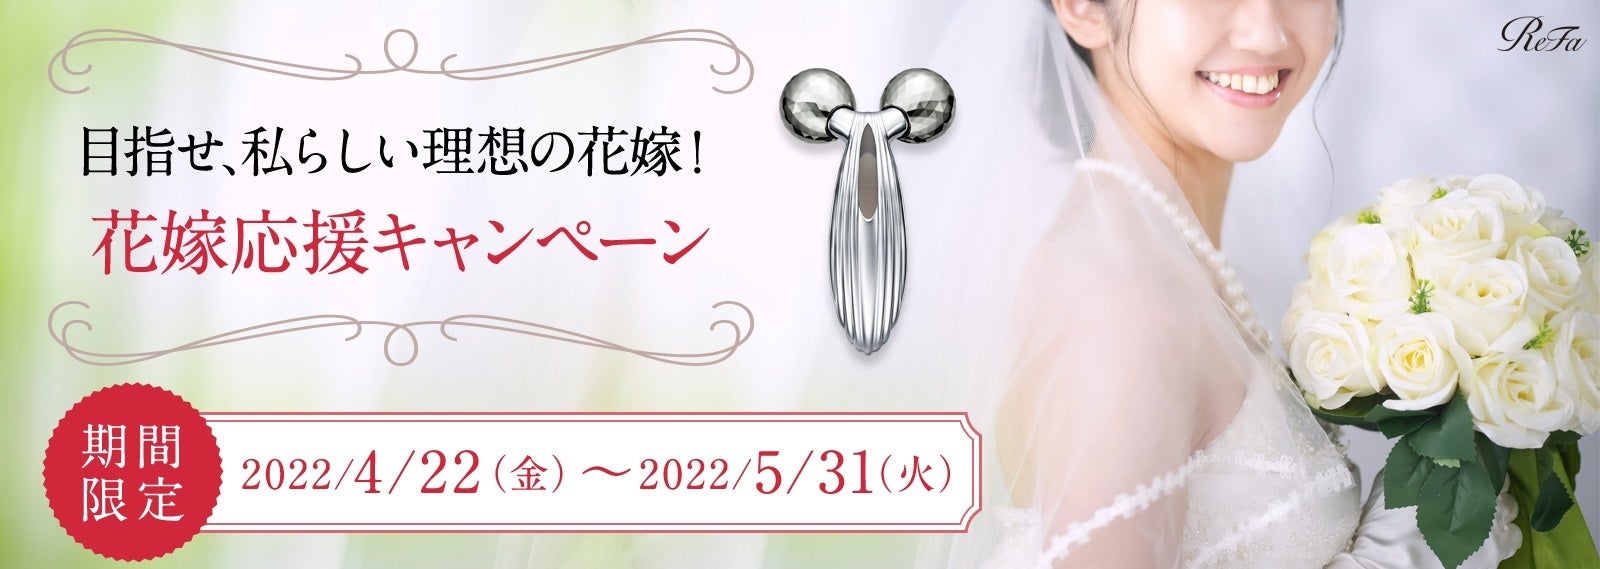 美容ブランド『ReFa(リファ)』の花嫁応援キャンペーンがスタート。